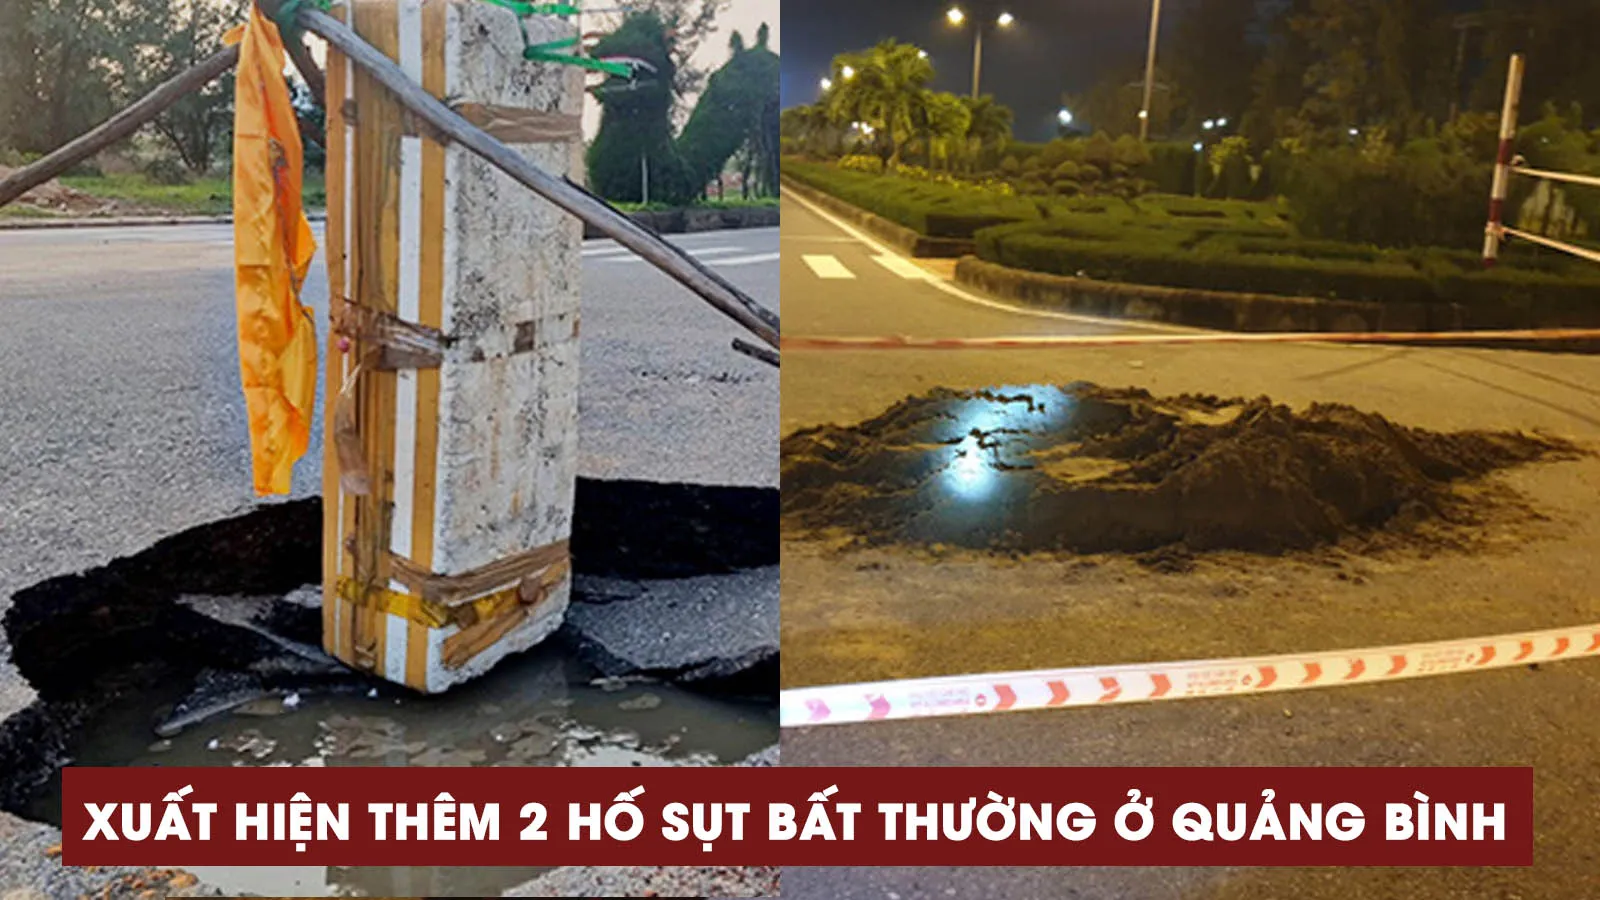 Quảng Bình: Xuất hiện thêm 2 hố “tử thần” bất thường giữa đường